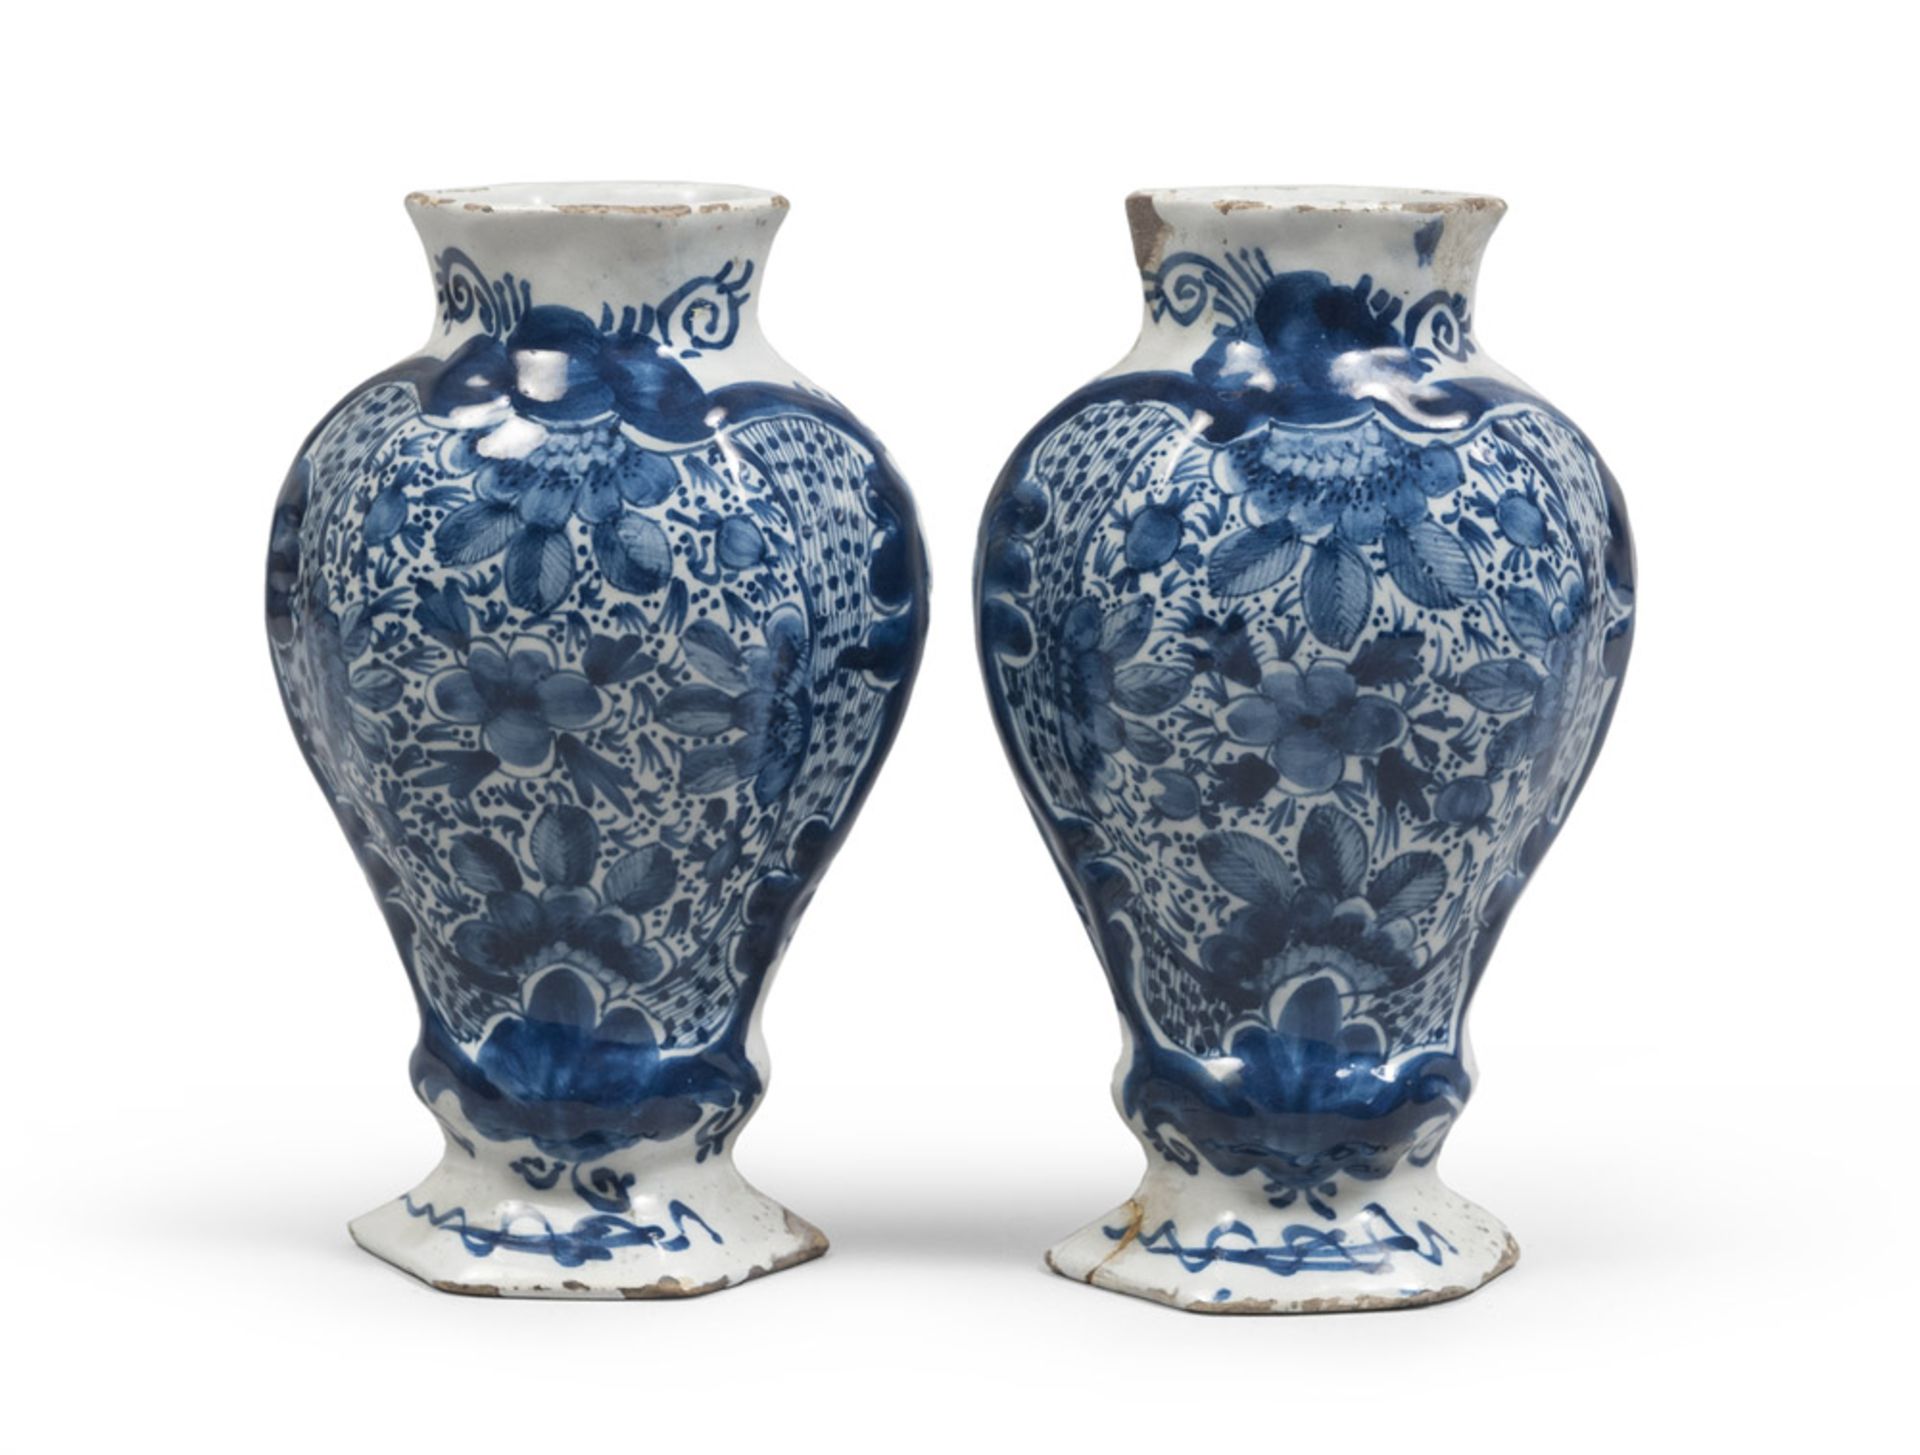 A pair of maiolica pots, Delft, 19th century. Measures cm. 21 x 12 x 8.COPPIA DI VASETTI IN